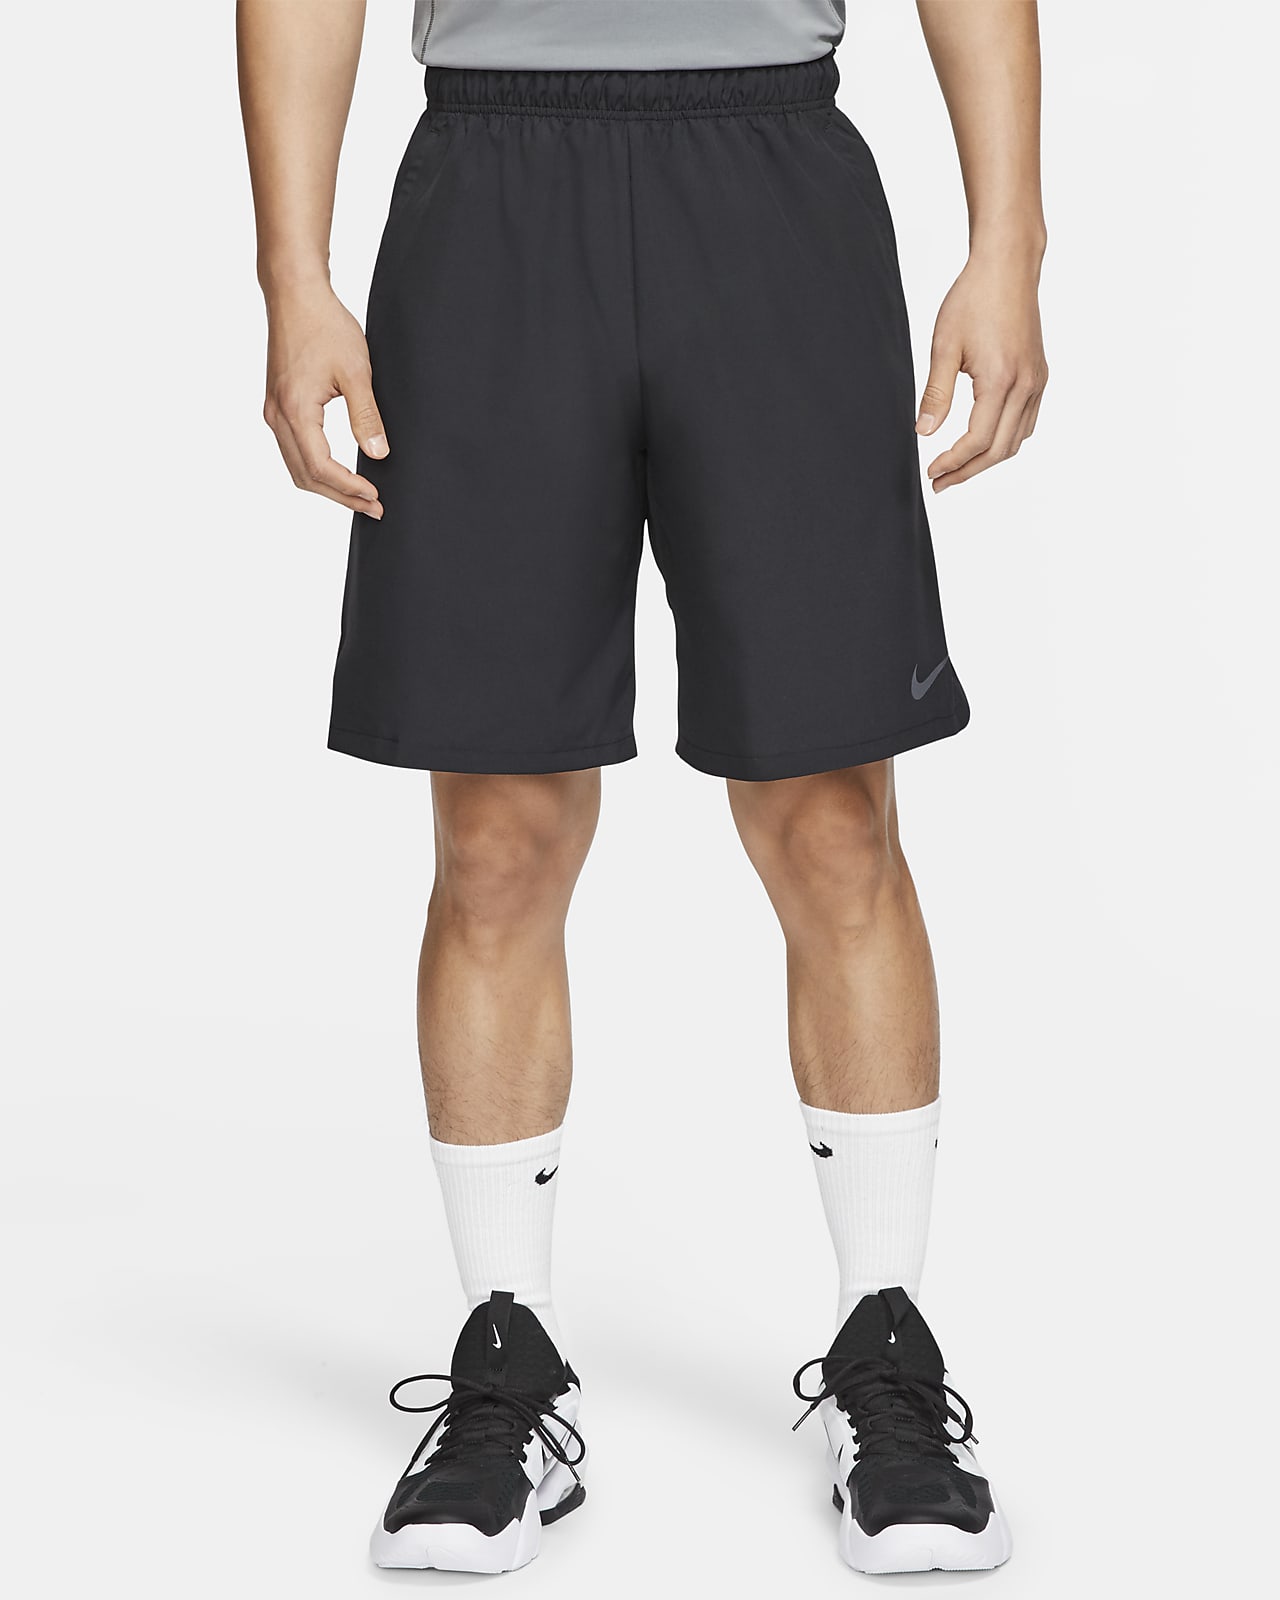 Шорты training. Nike Flex shorts. Шорты Nike Training 2.0. Шорты мужские Nike Flex. Nike Flex Woven.